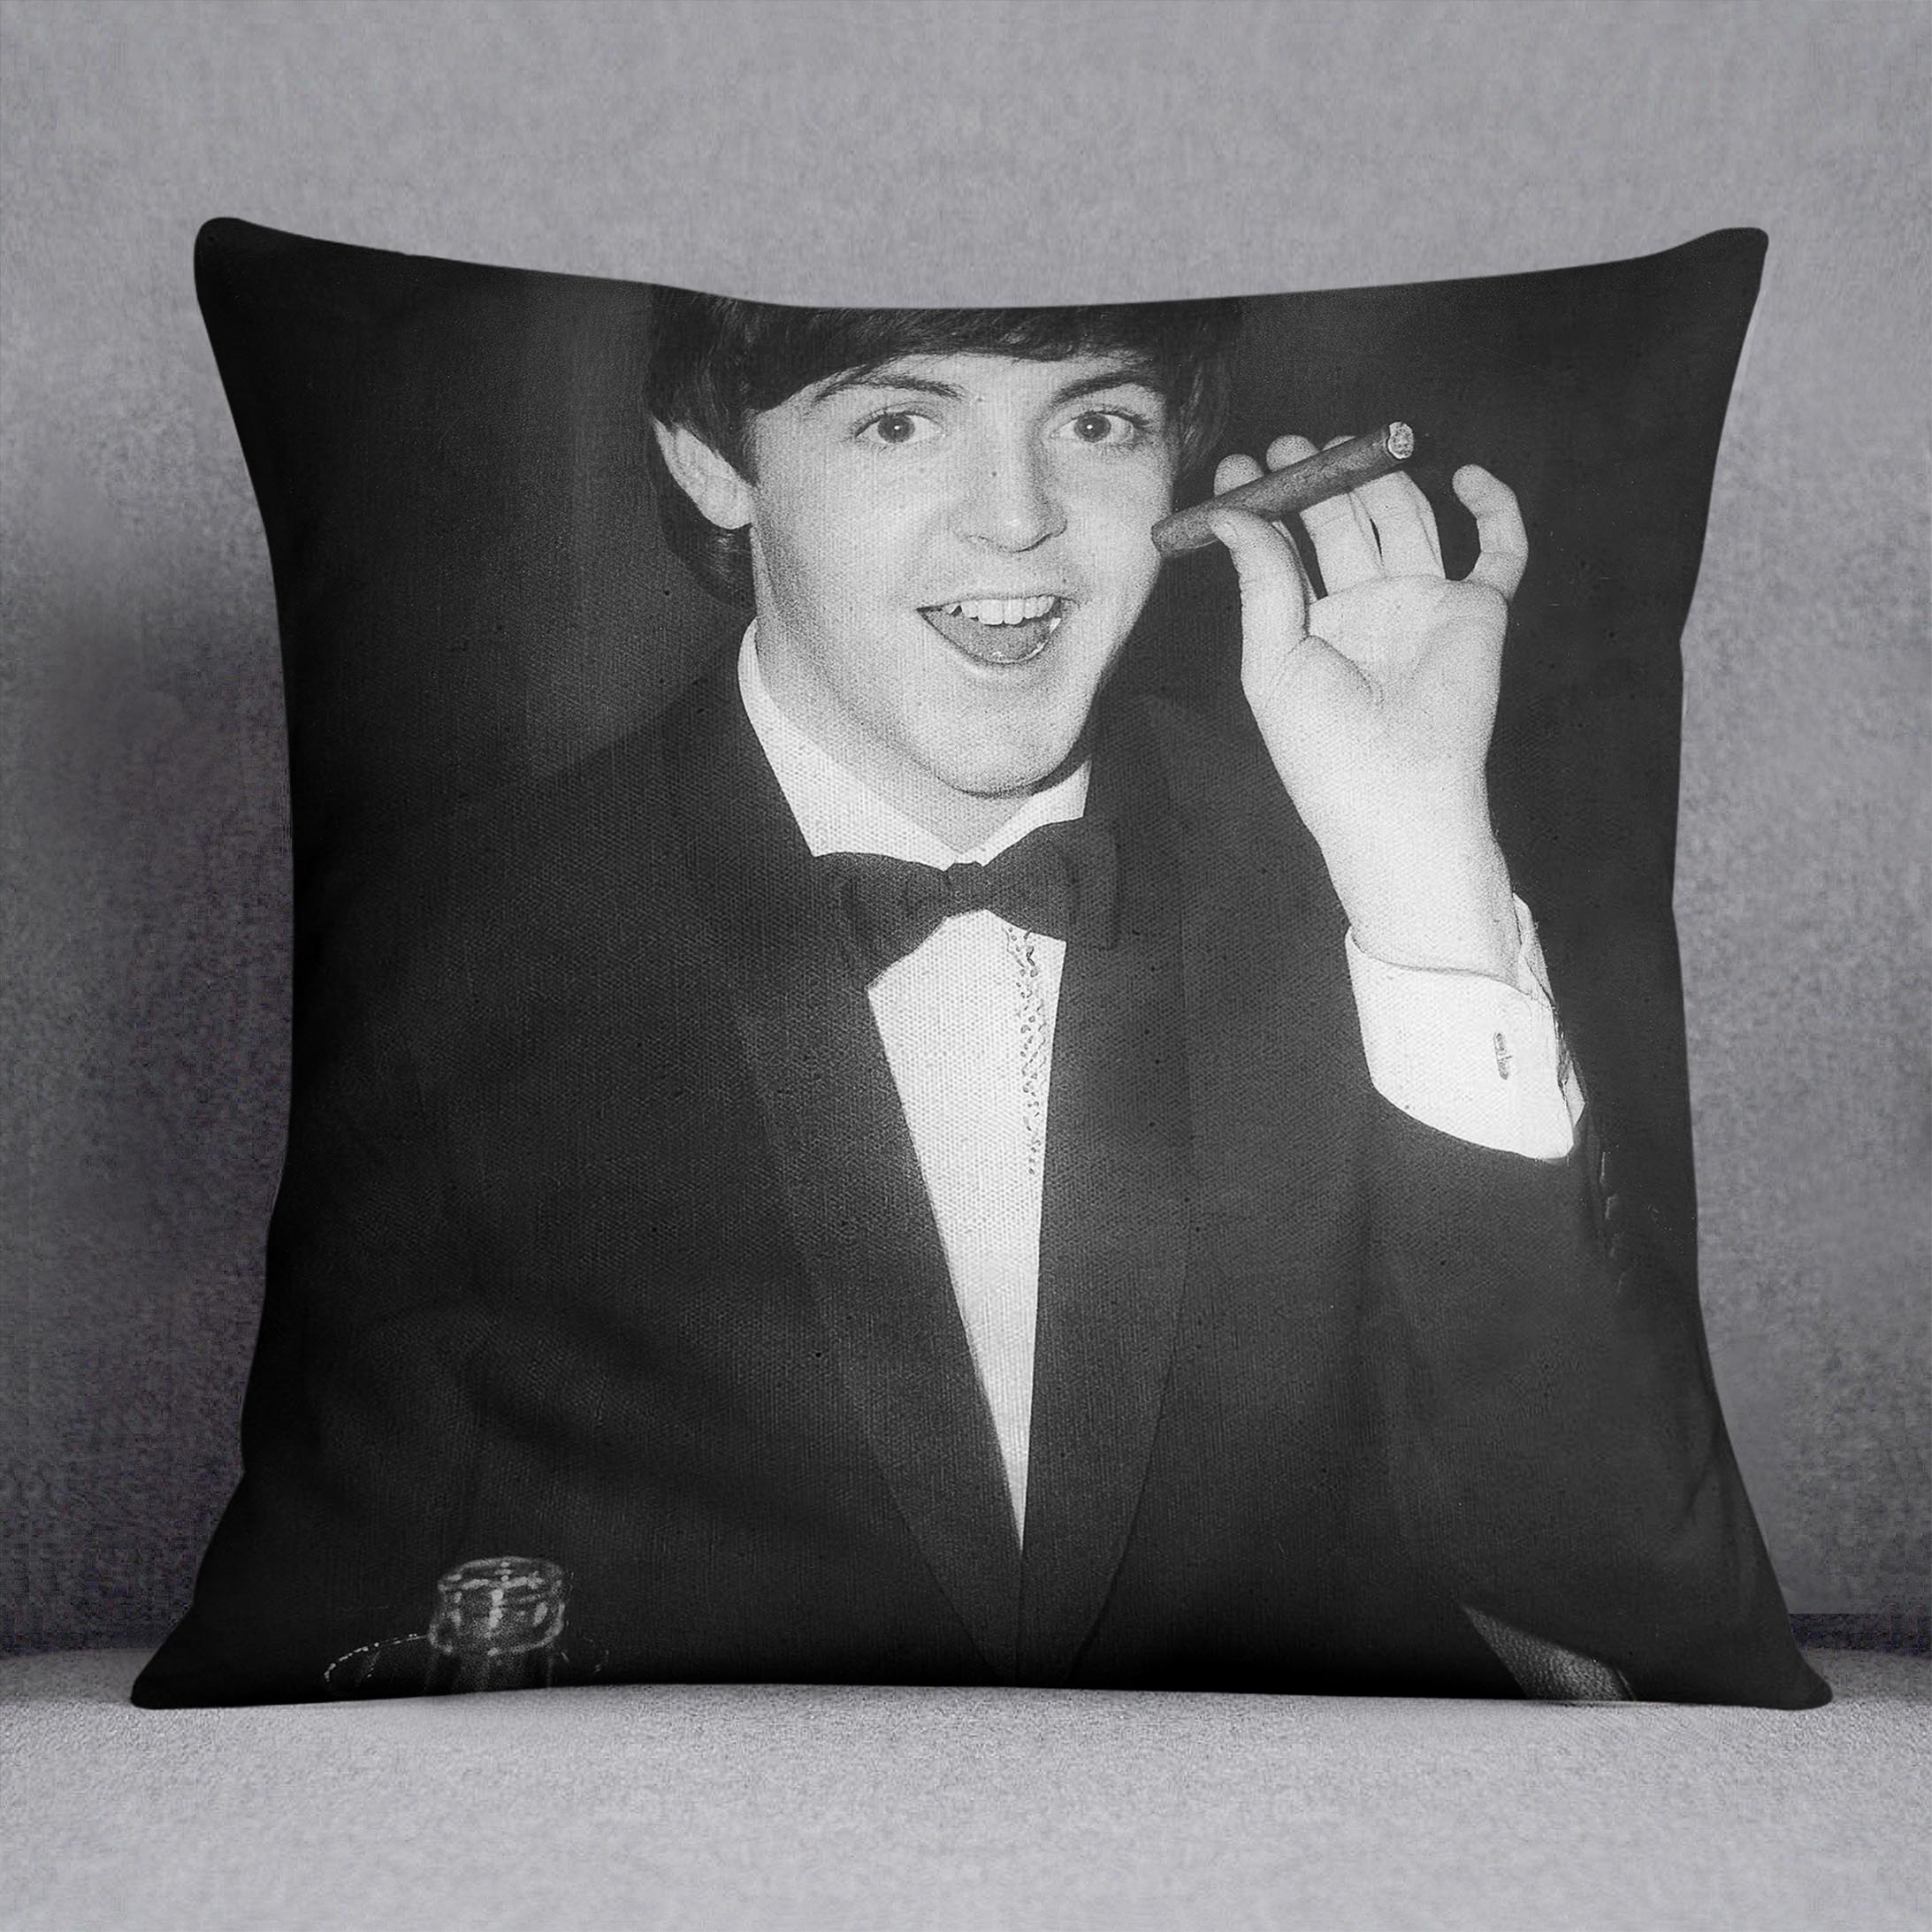 Paul McCartney with a cigar Cushion